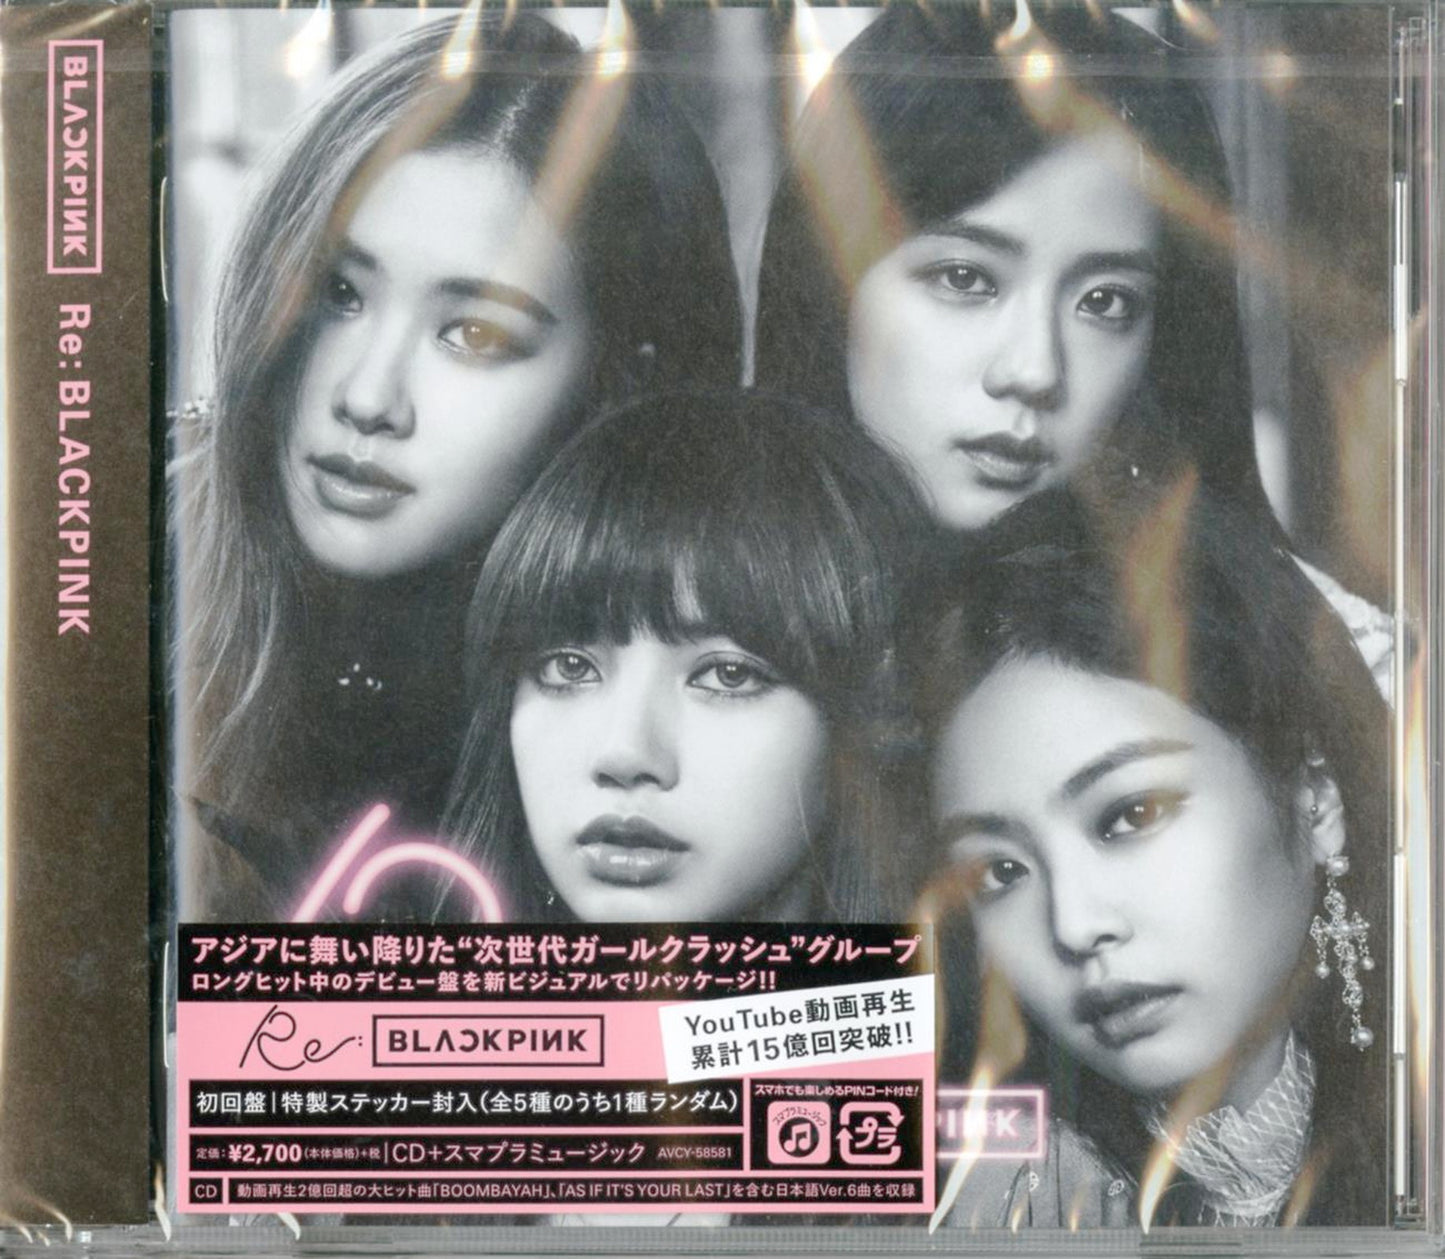 Blackpink - Re: Blackpink - Japan CD